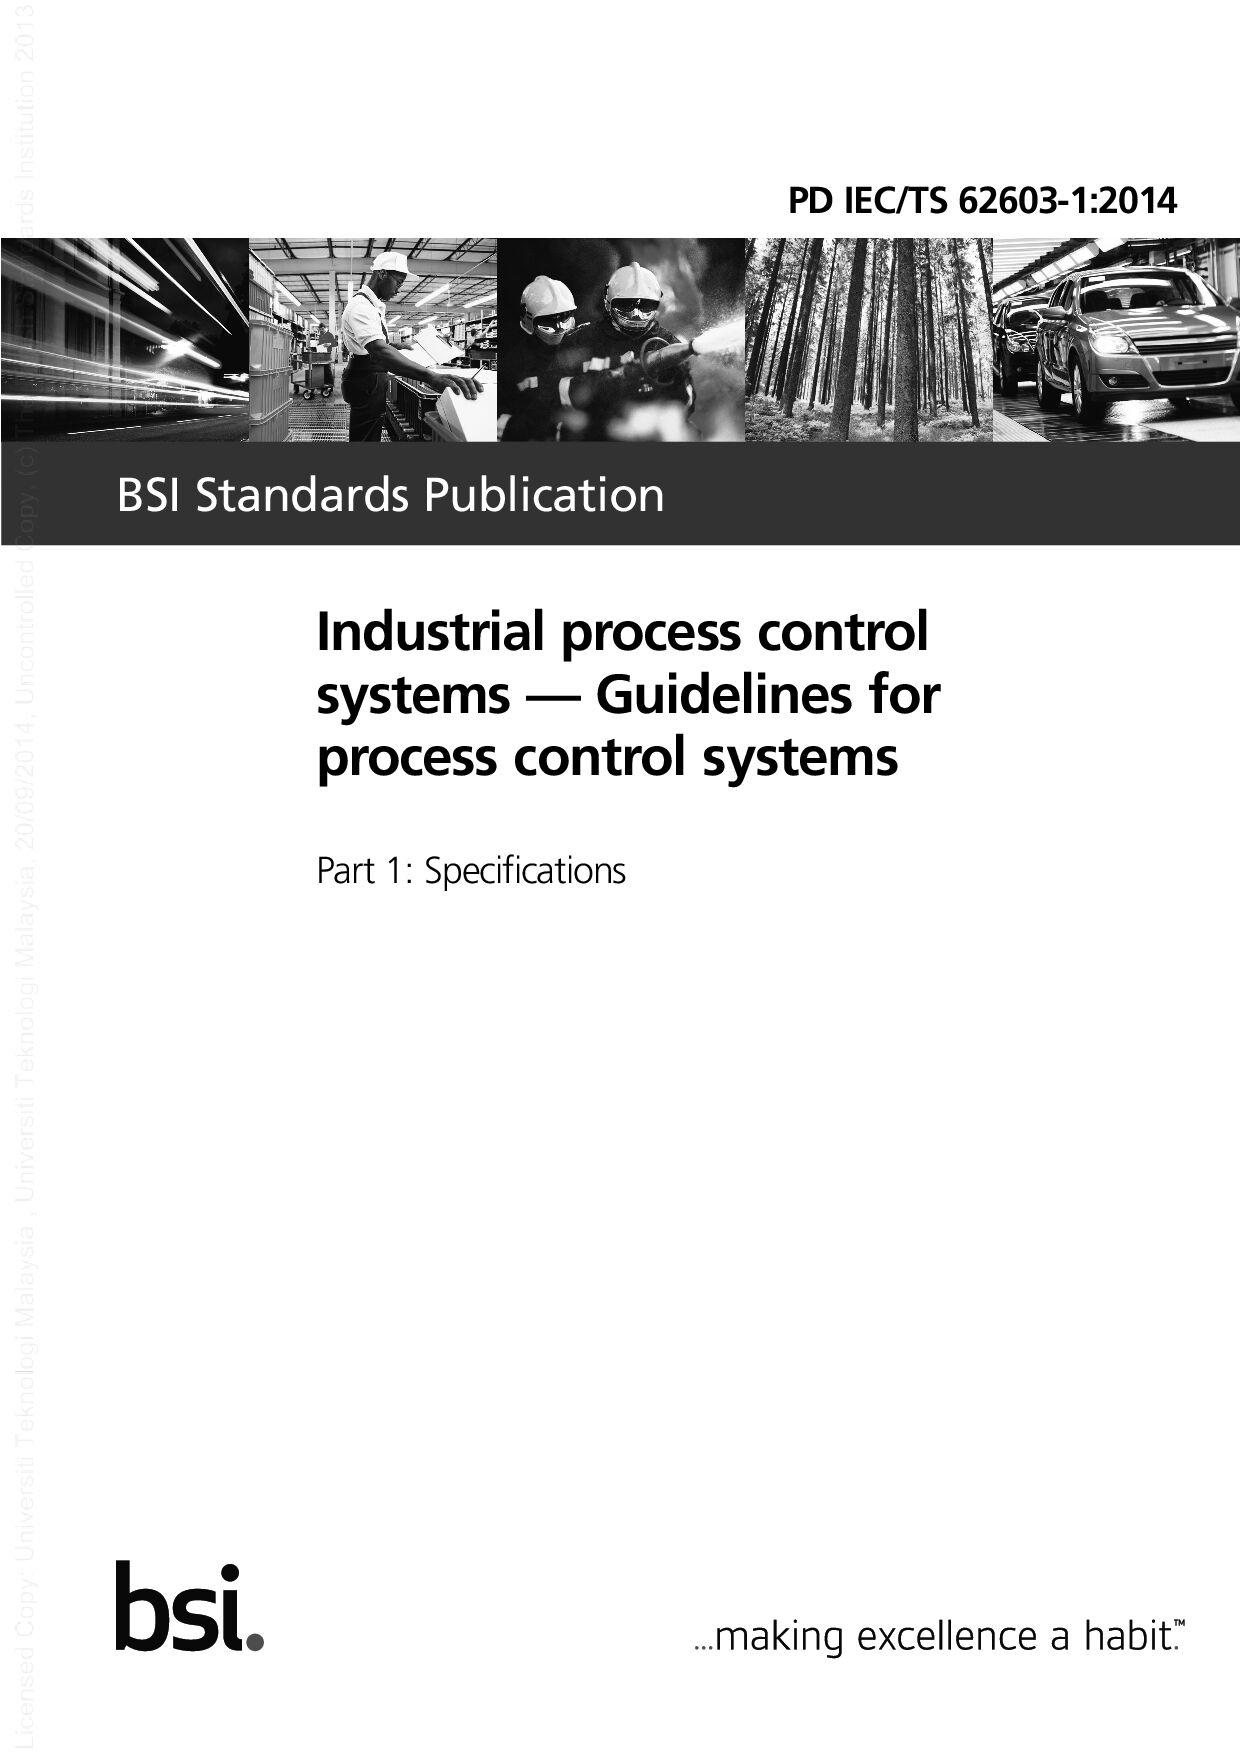 BS PD IEC/TS 62603-1:2014